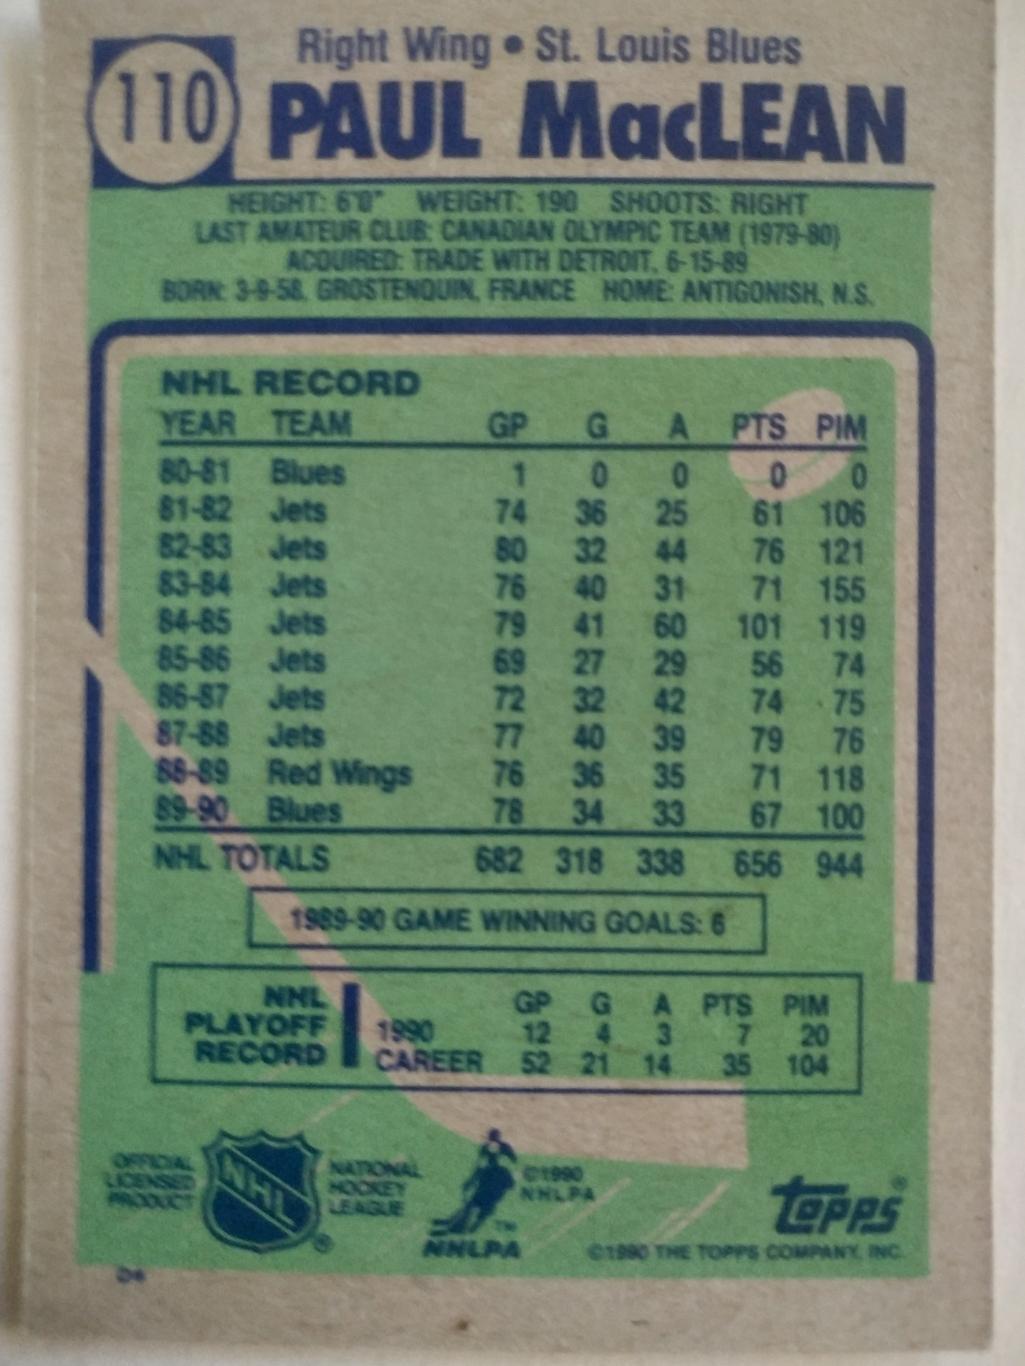 ХОККЕЙ КАРТОЧКА НХЛ TOPPS 1990-91 NHL PAUL MACLEAN ST. LOUIS BLUES #110 1